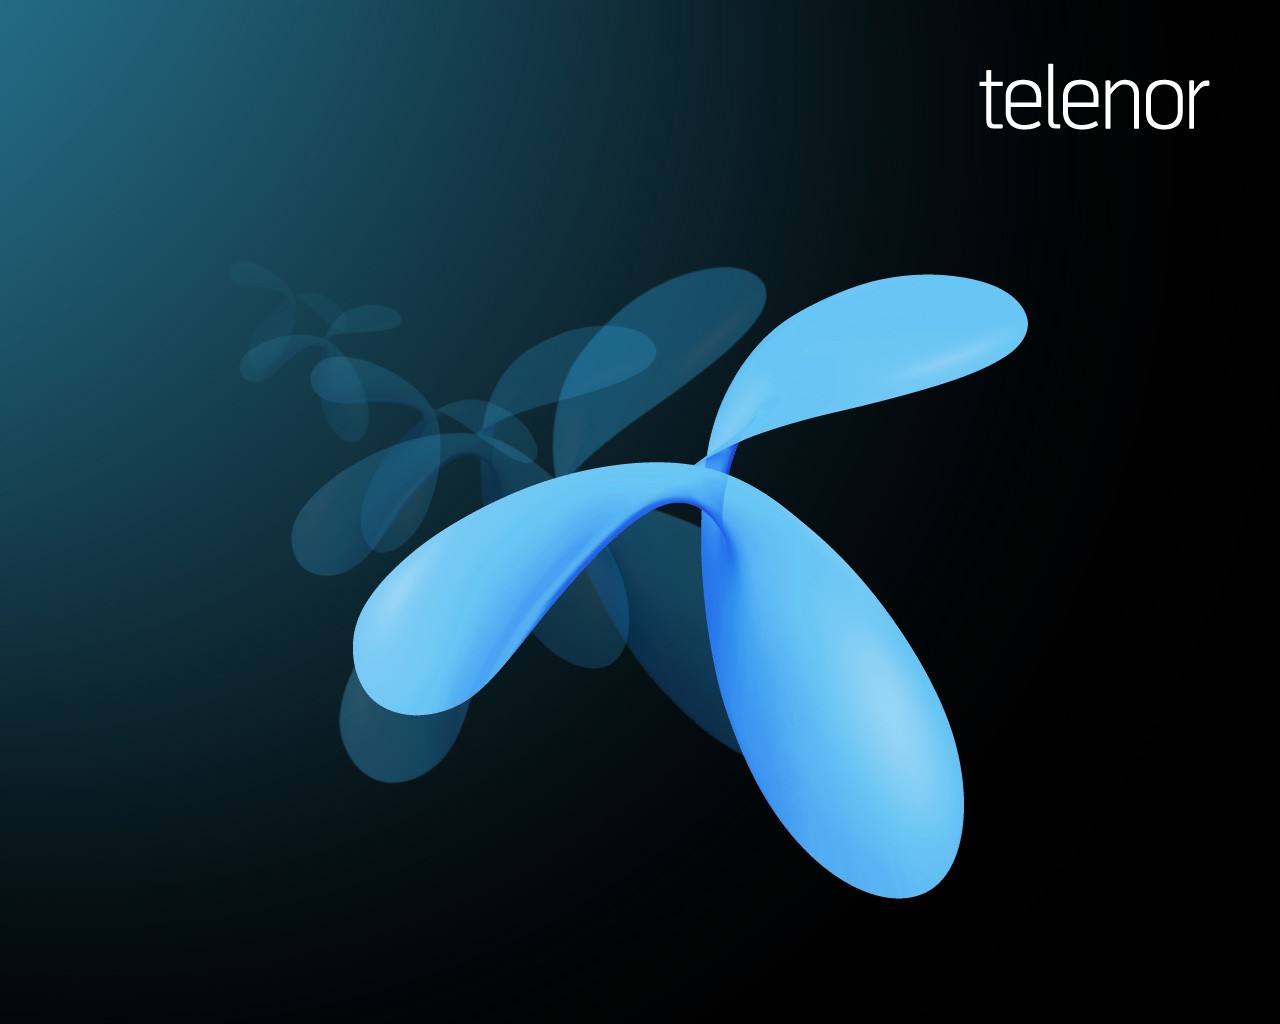 Átalakítja díjcsomag-kínálatát a Telenor